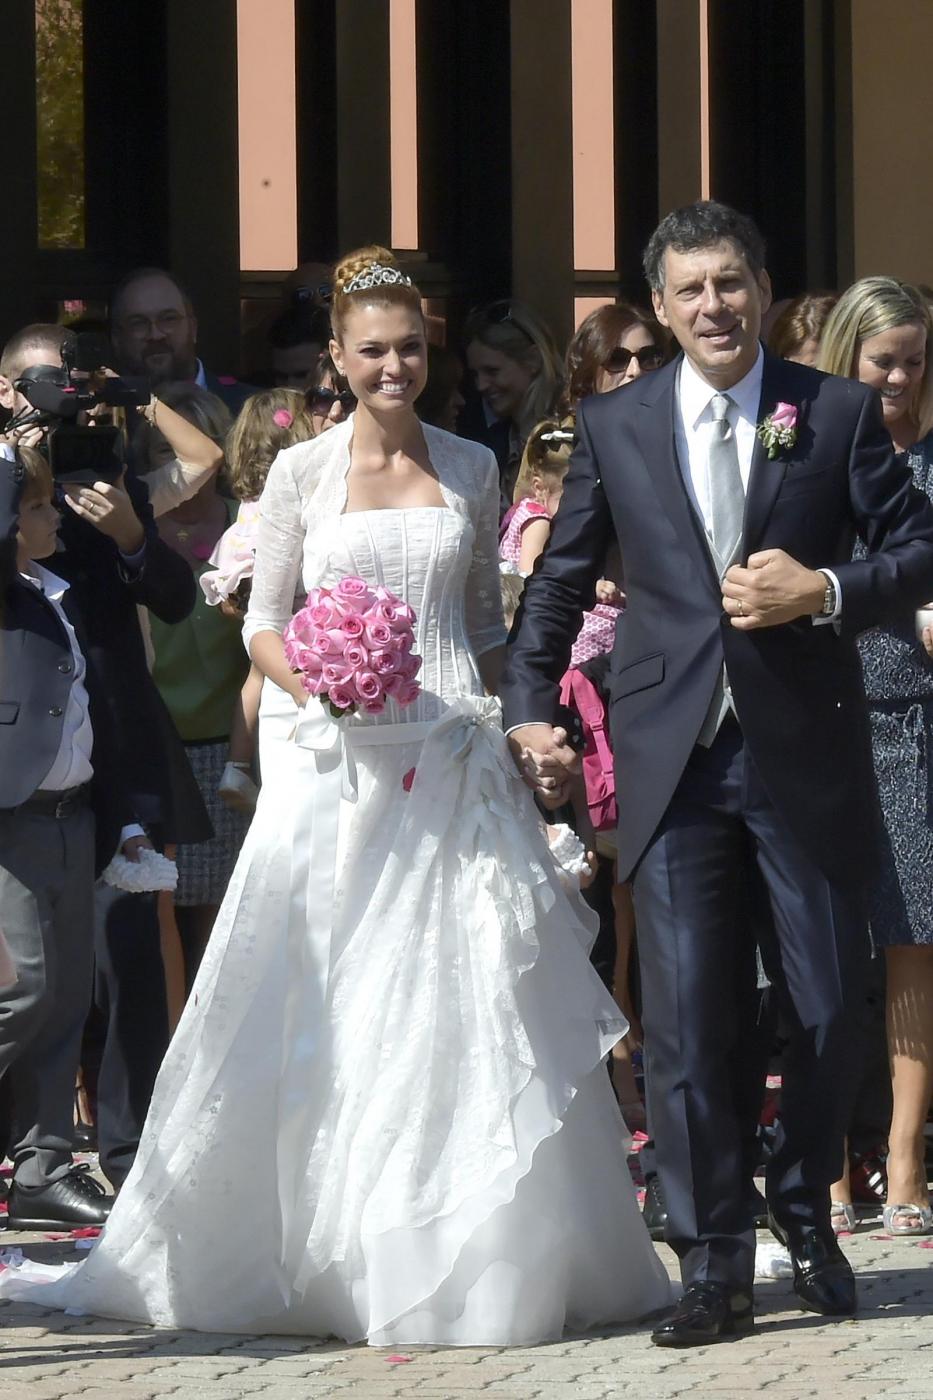 Fabrizio Frizzi sposa Carlotta Mantovan: le foto del matrimonio